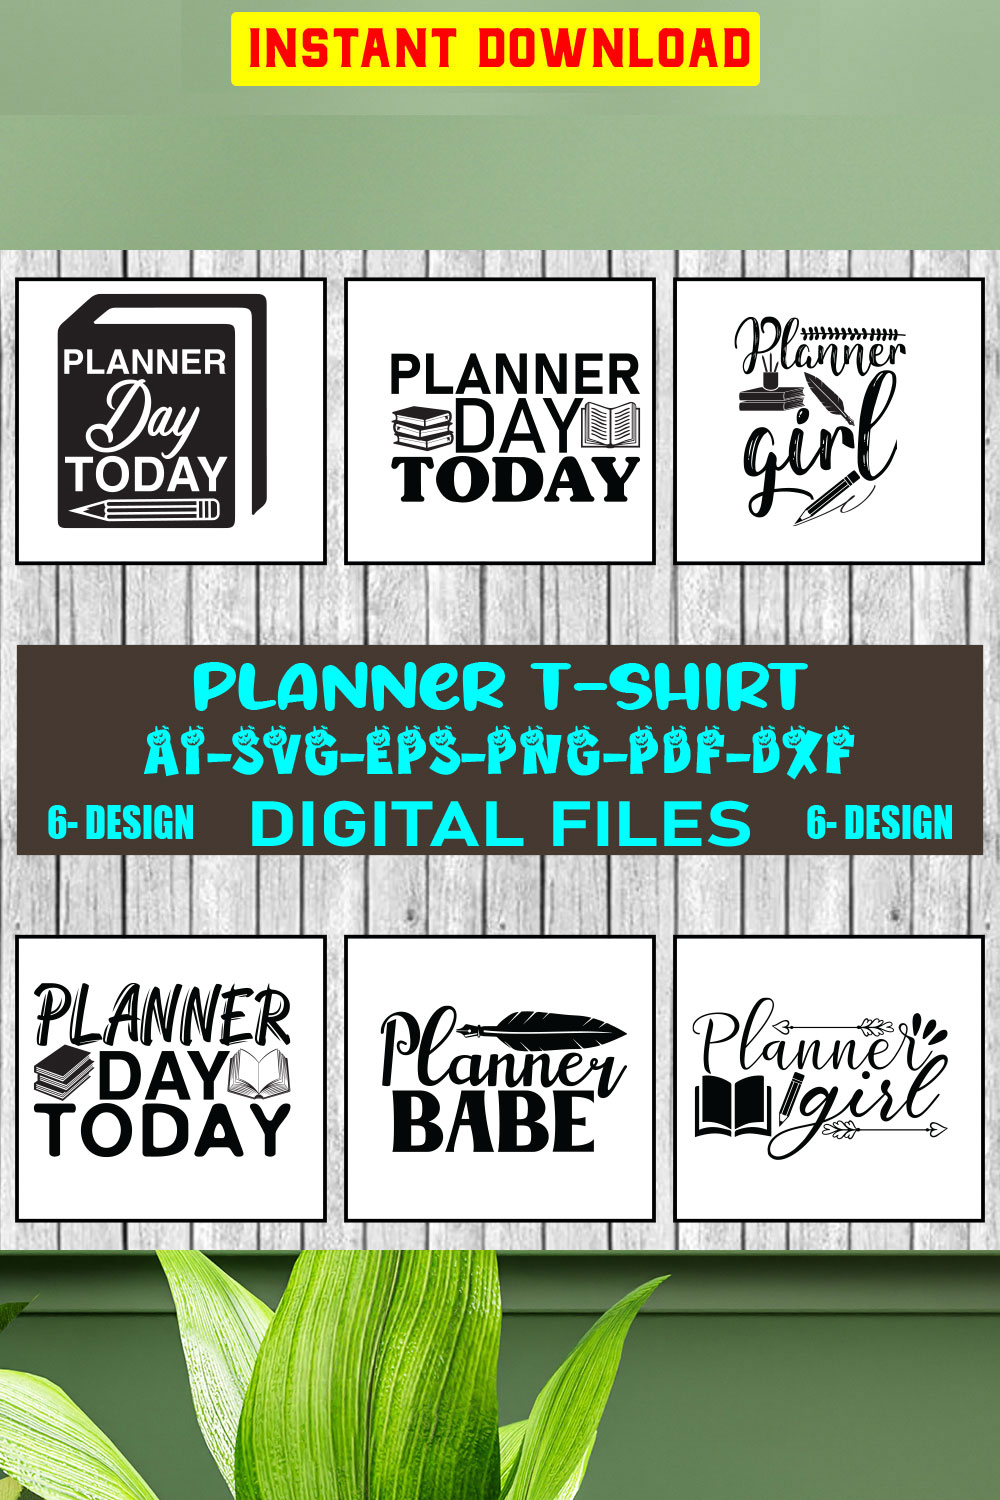 Planner T-shirt Design Bundle Vol-3 pinterest preview image.